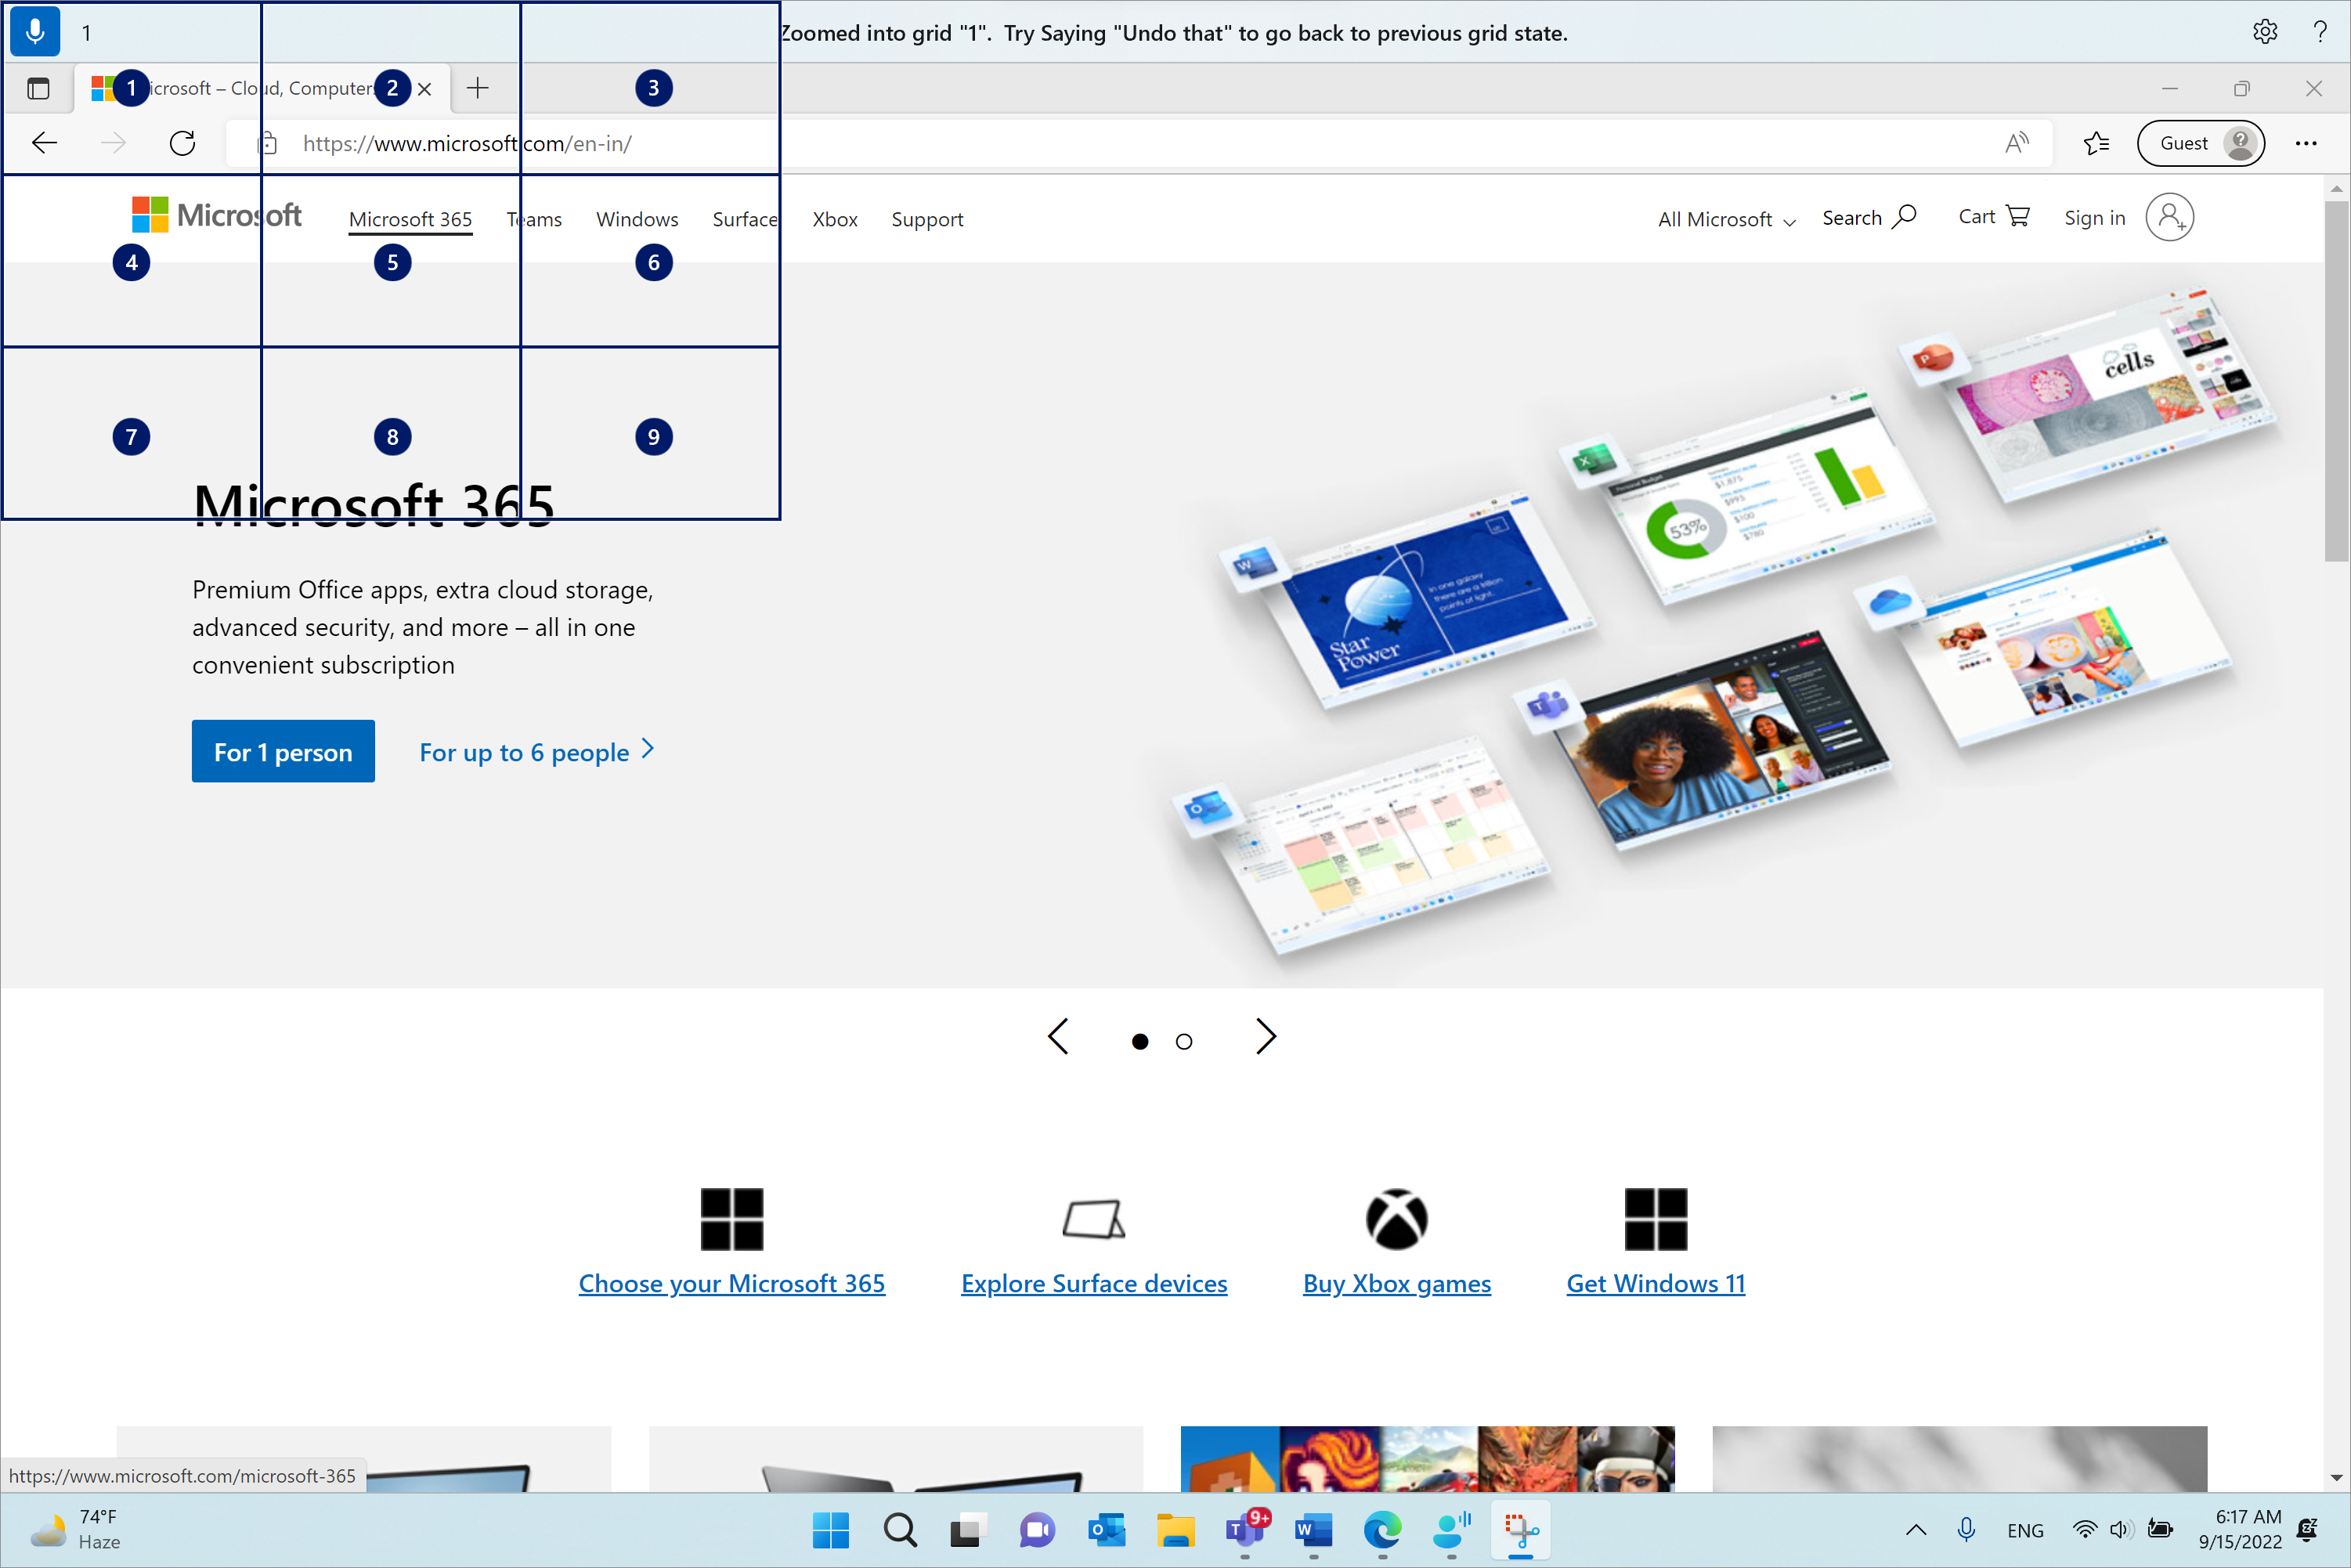 Microsoft Edge este deschis și pe pagina Microsoft.com. Bara de acces vocal este în partea de sus și în starea de ascultare. Comanda emisă este "1", iar feedbackul afișat este "Mărit în grila "1". Încercați să spuneți "anulare" pentru a reveni la starea anterioară a grilei."